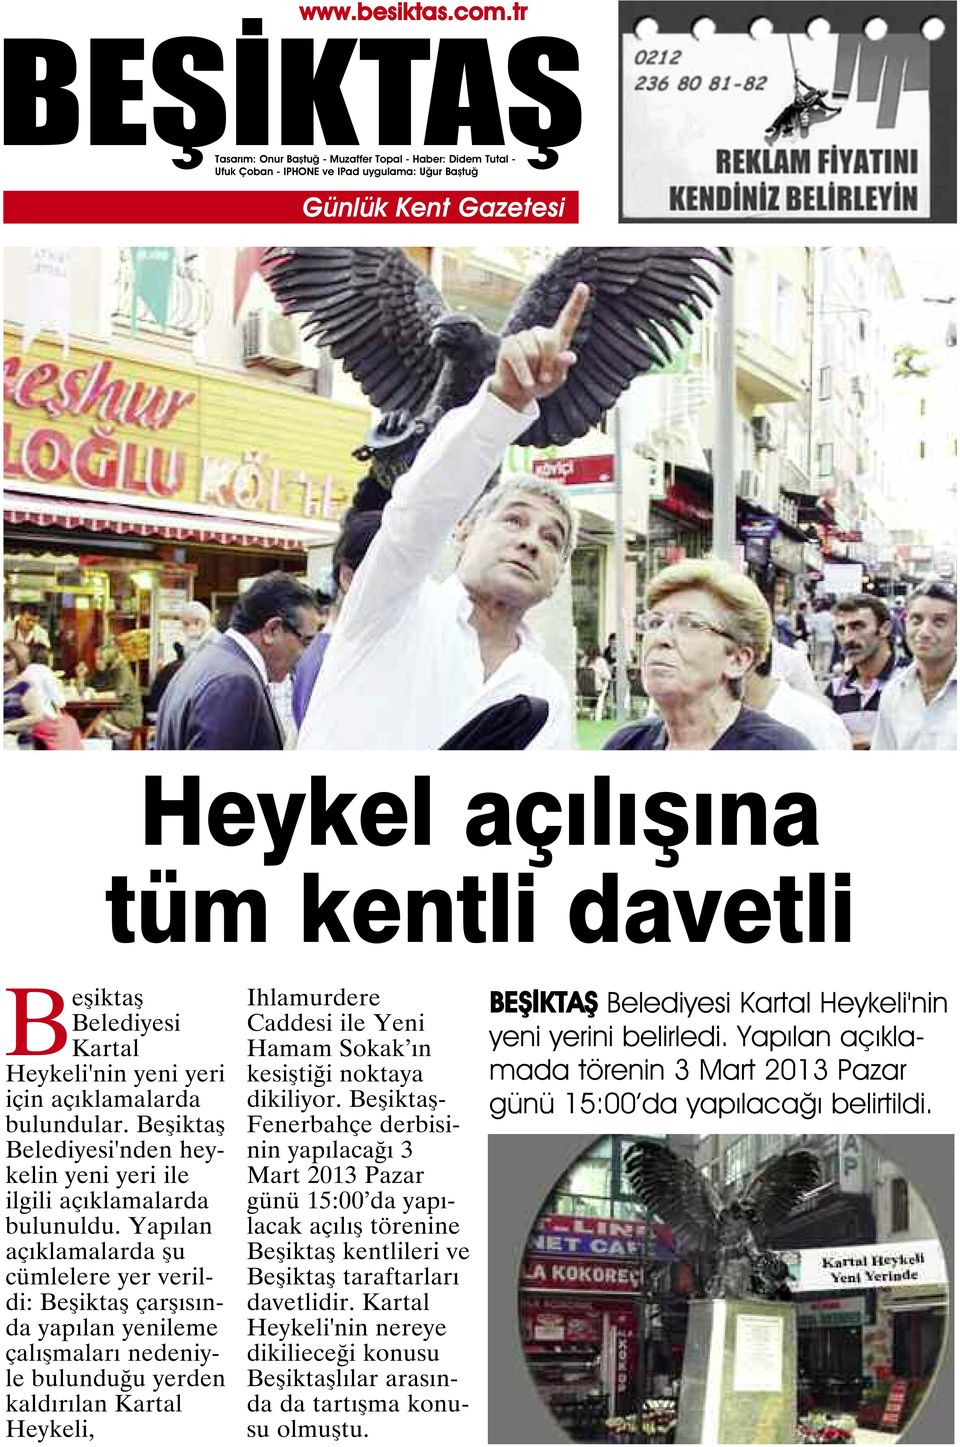 kesiştiği noktaya dikiliyor. - Fenerbahçe derbisinin yapılacağı 3 Mart 2013 Pazar günü 15:00 da yapılacak açılış törenine kentlileri ve taraftarları davetlidir.